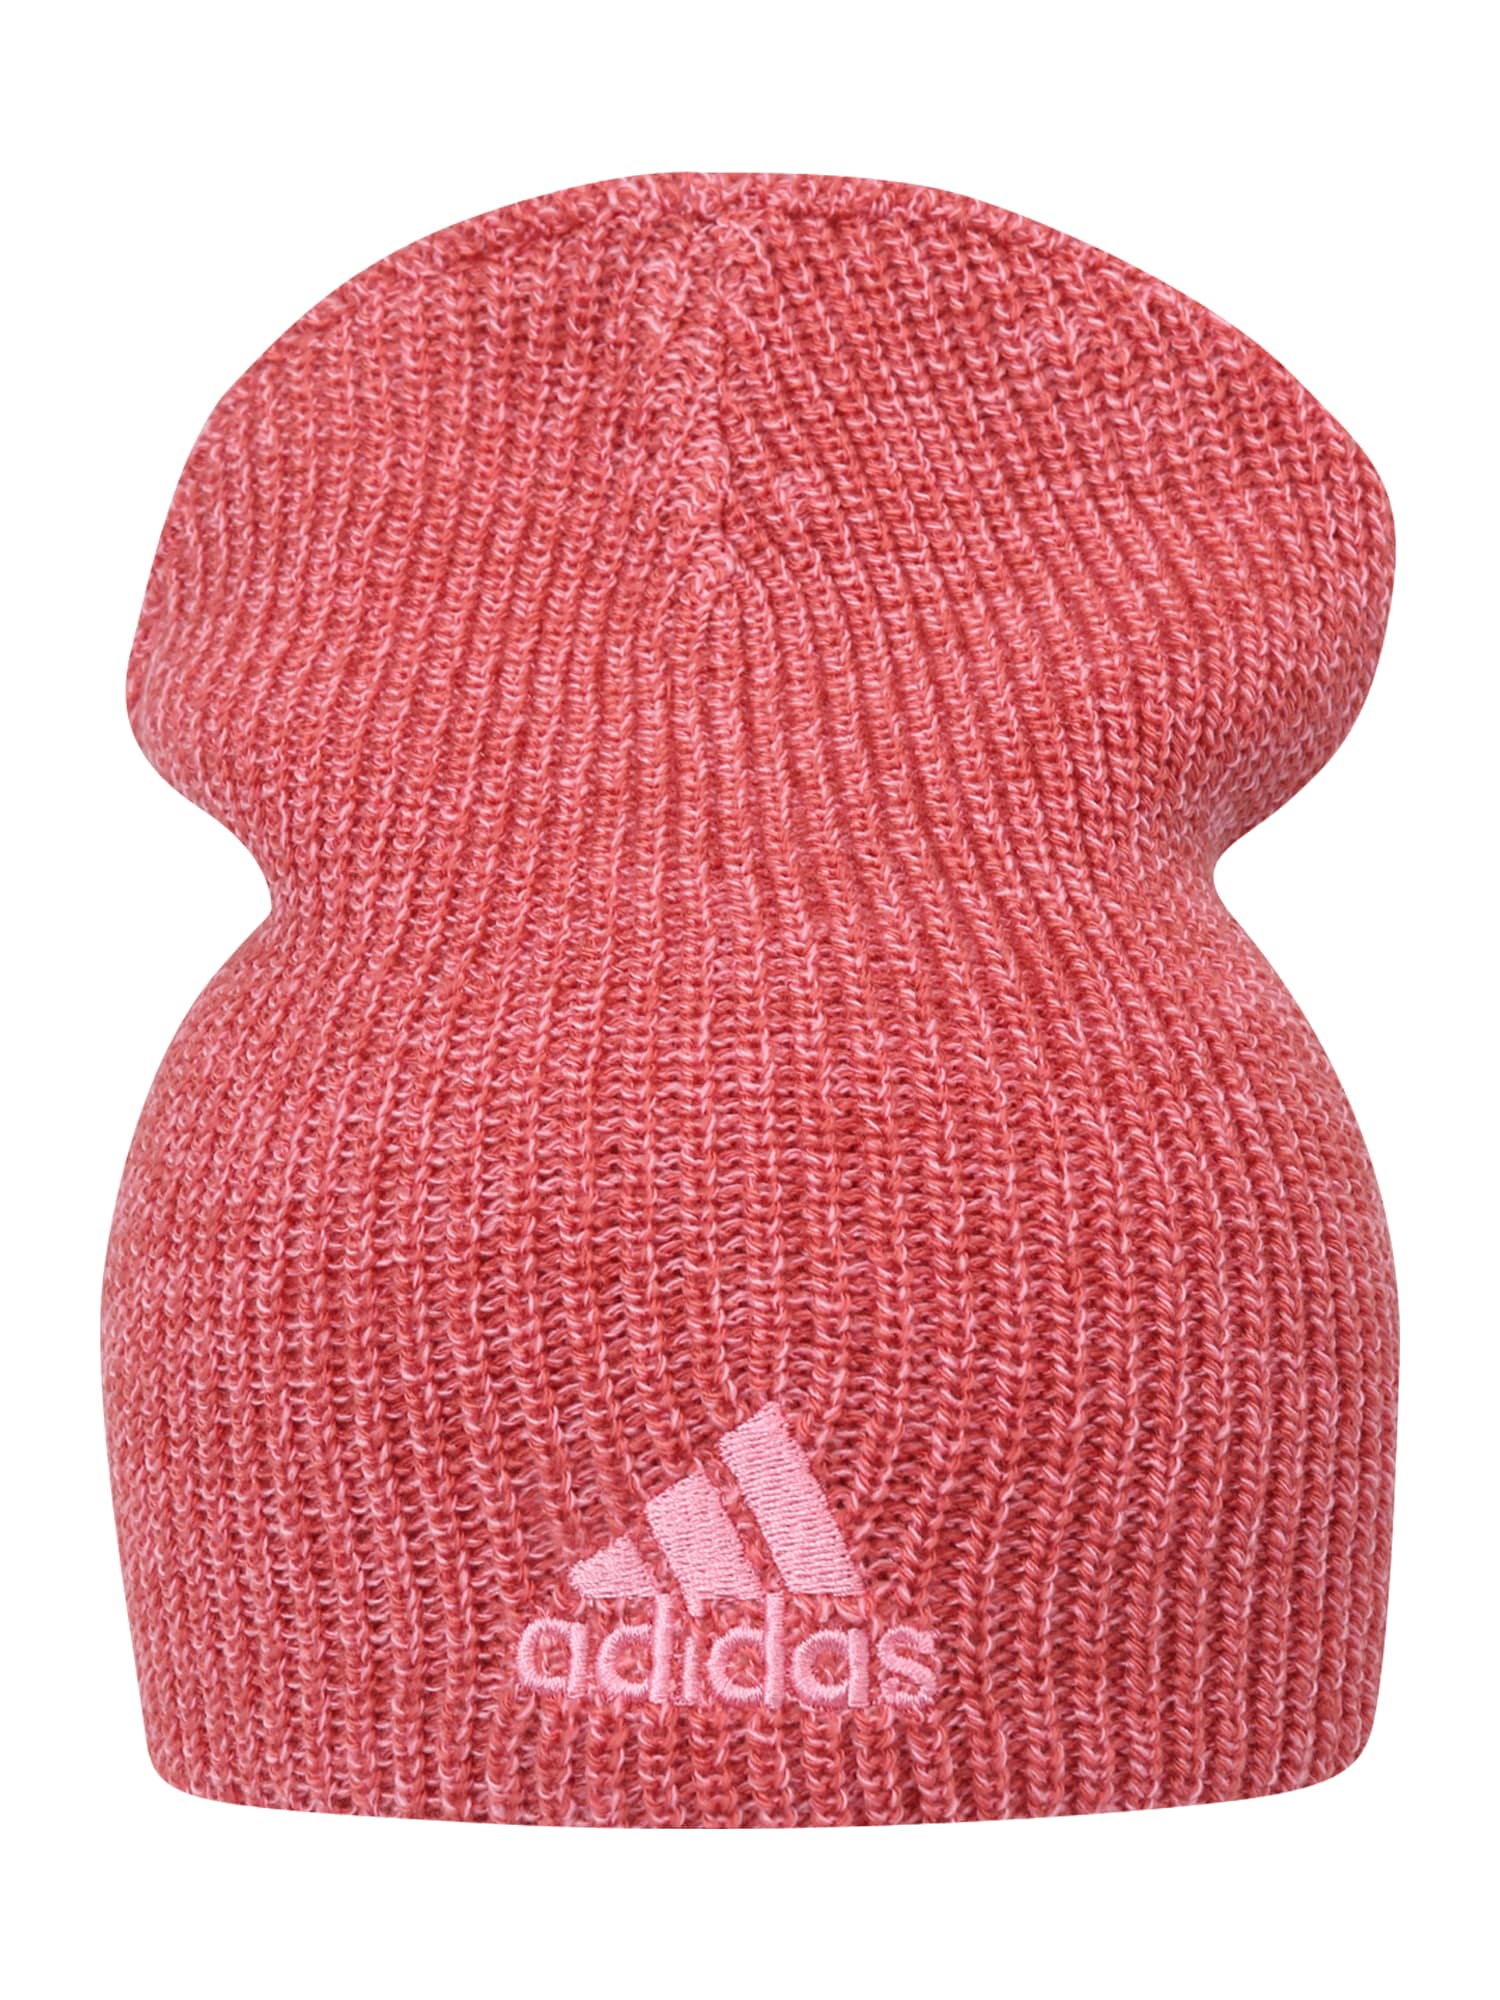 ADIDAS PERFORMANCE Sporta cepure rožkrāsas / pasteļsarkans